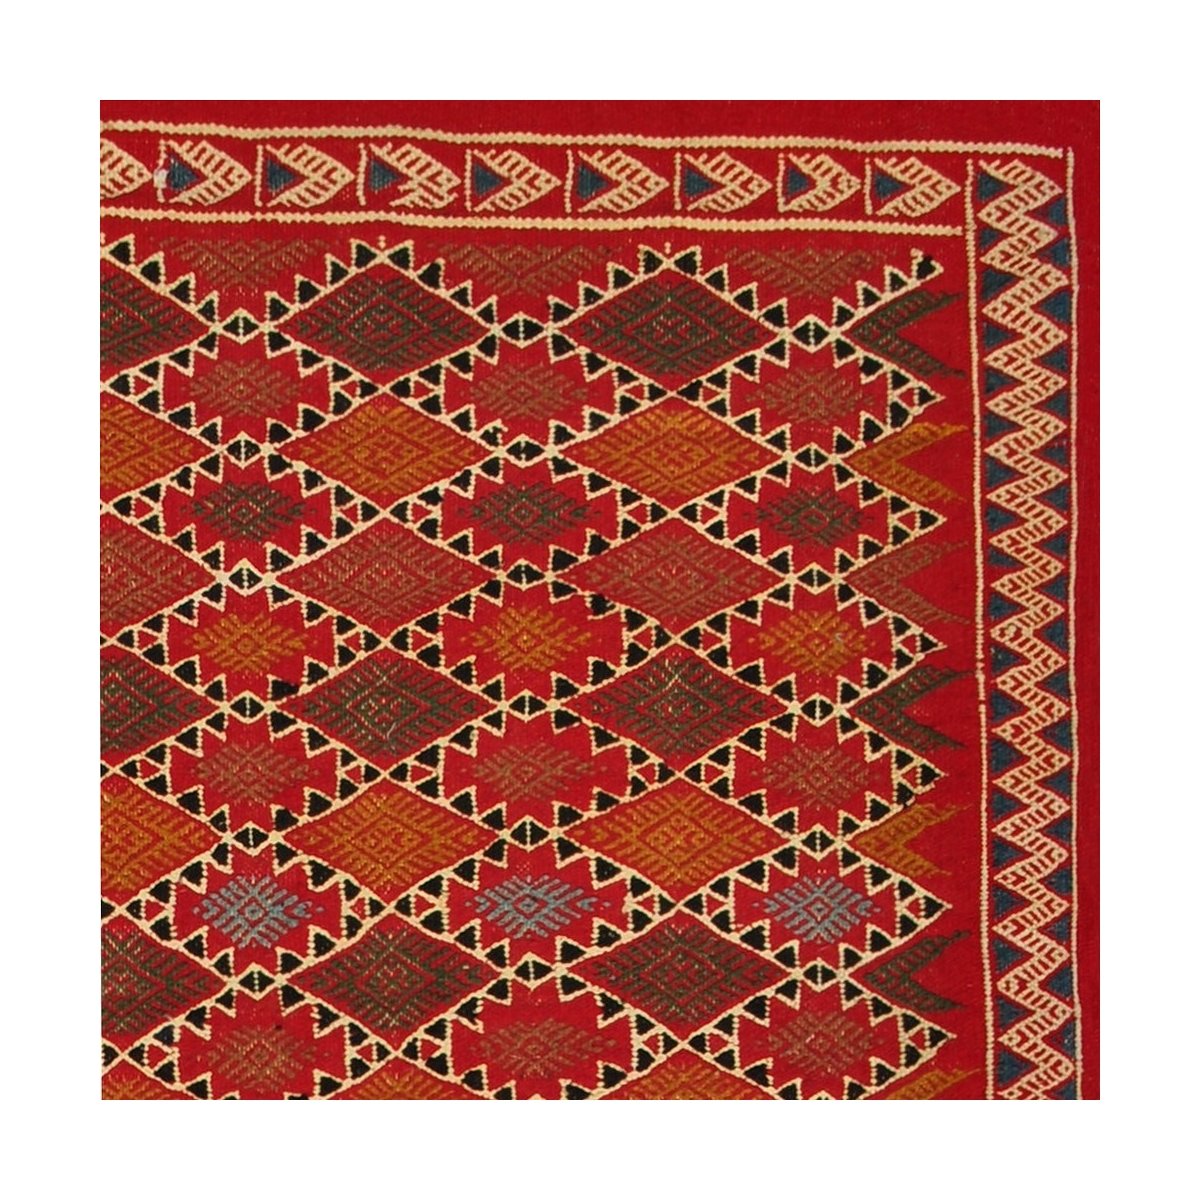 Tapete berbere Tapete Kilim Sultan 100x205 Multicor (Tecidos à mão, Lã, Tunísia) Tapete tunisiano kilim, estilo marroquino. Tape